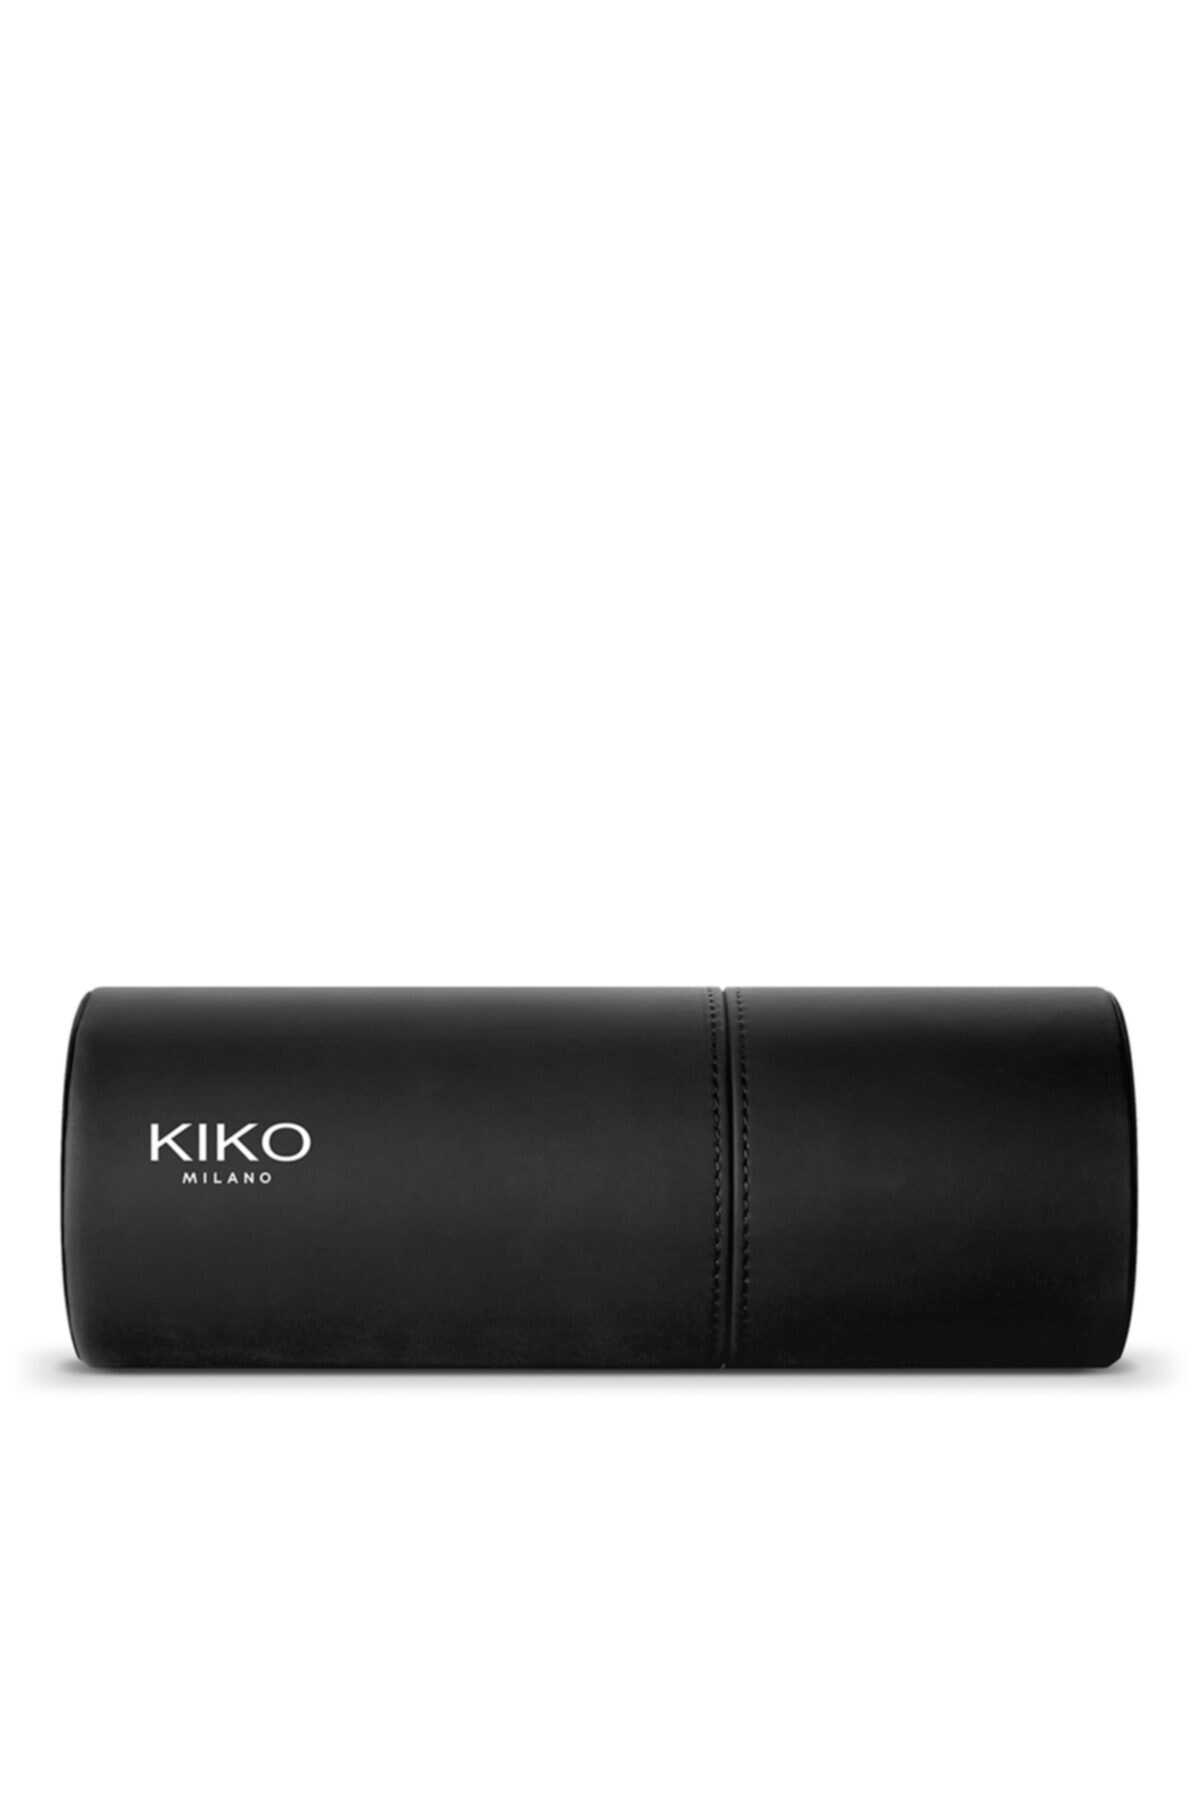 کیف براش استوانه ای مشکی برند KIKO